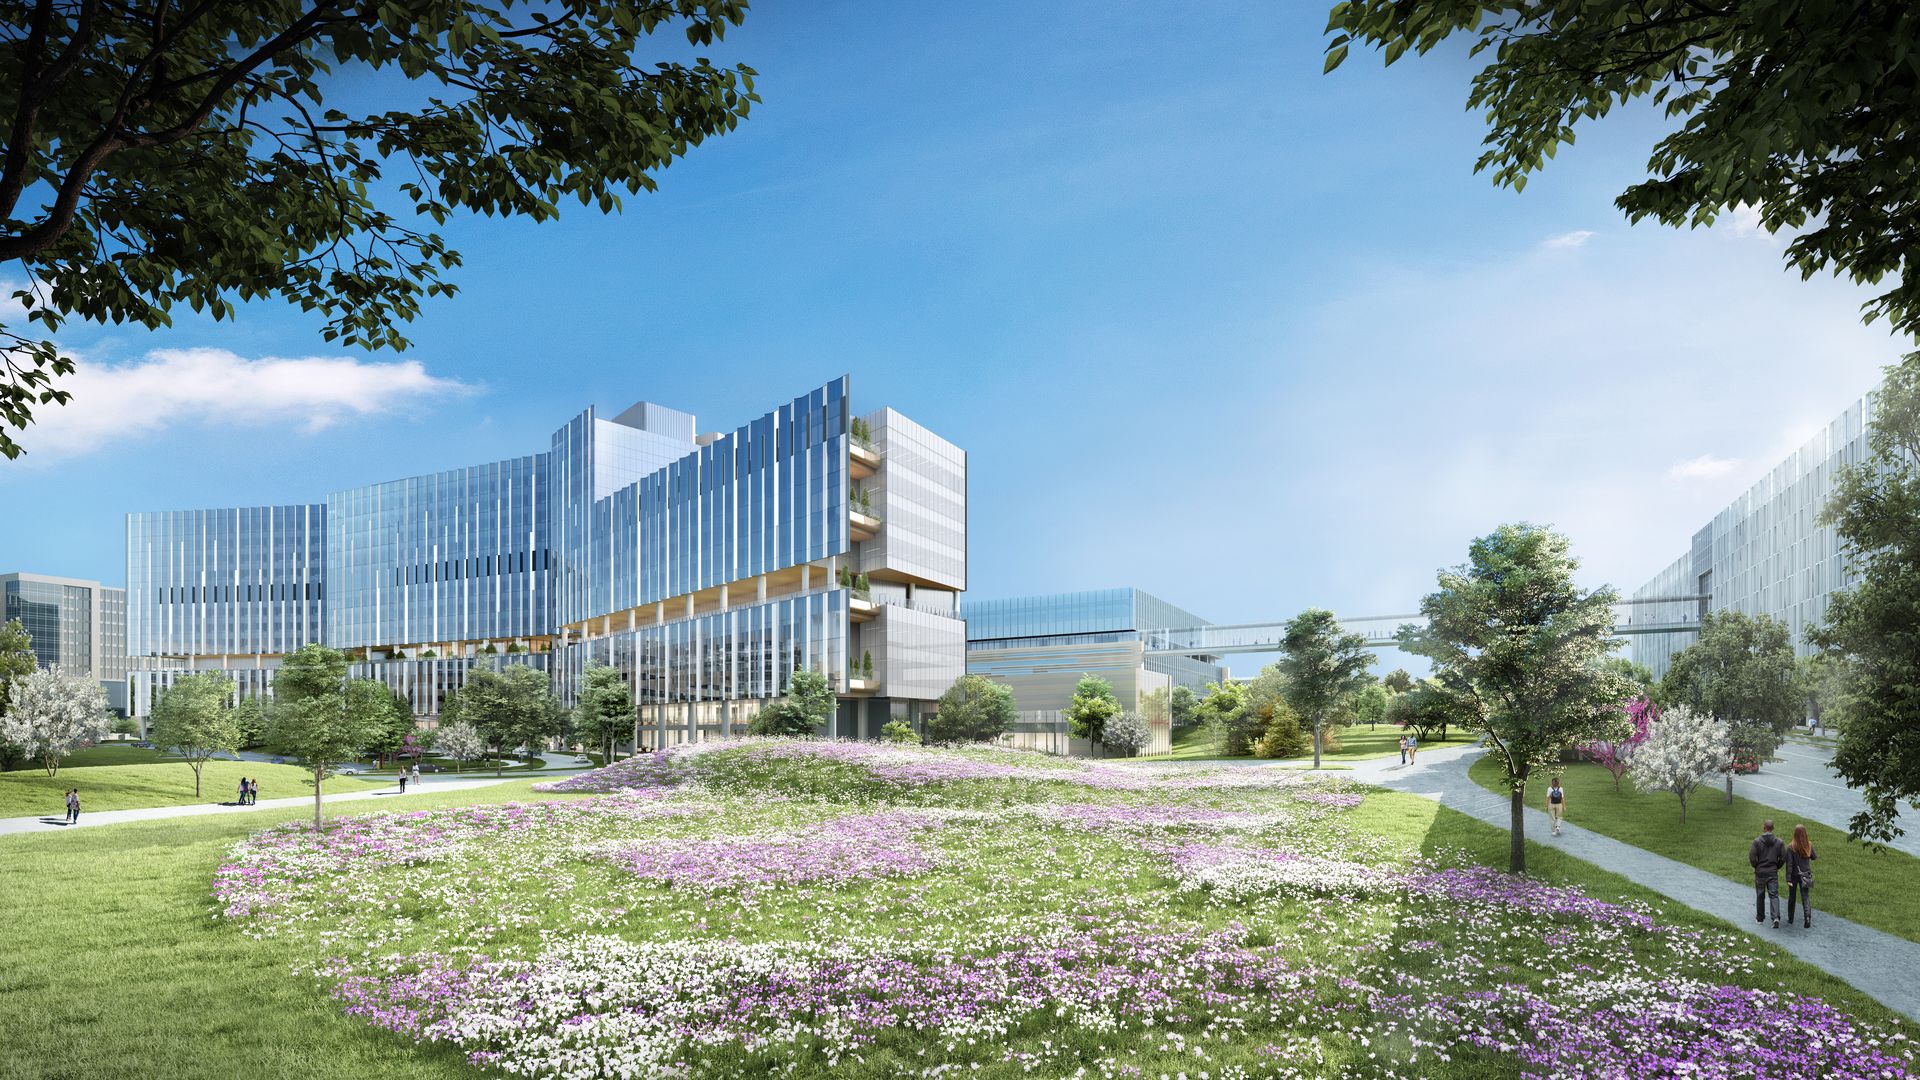 A rendering of a future Dallas pediatric hospital